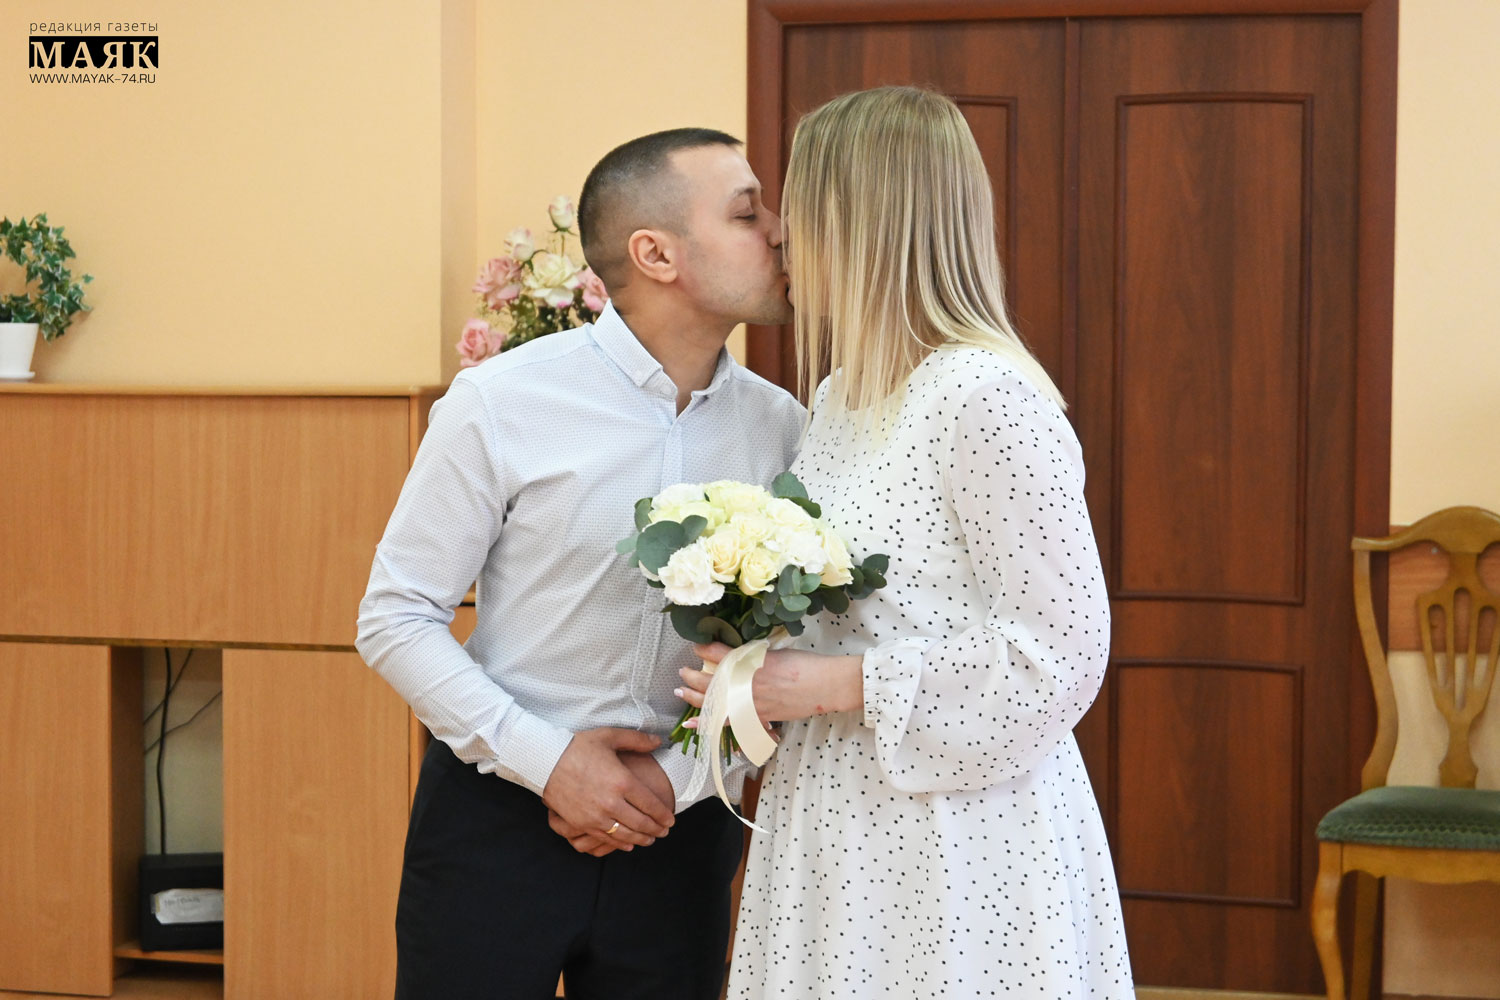 Свадьбы года! Брачные рекорды поставлены в Красноармейском районе